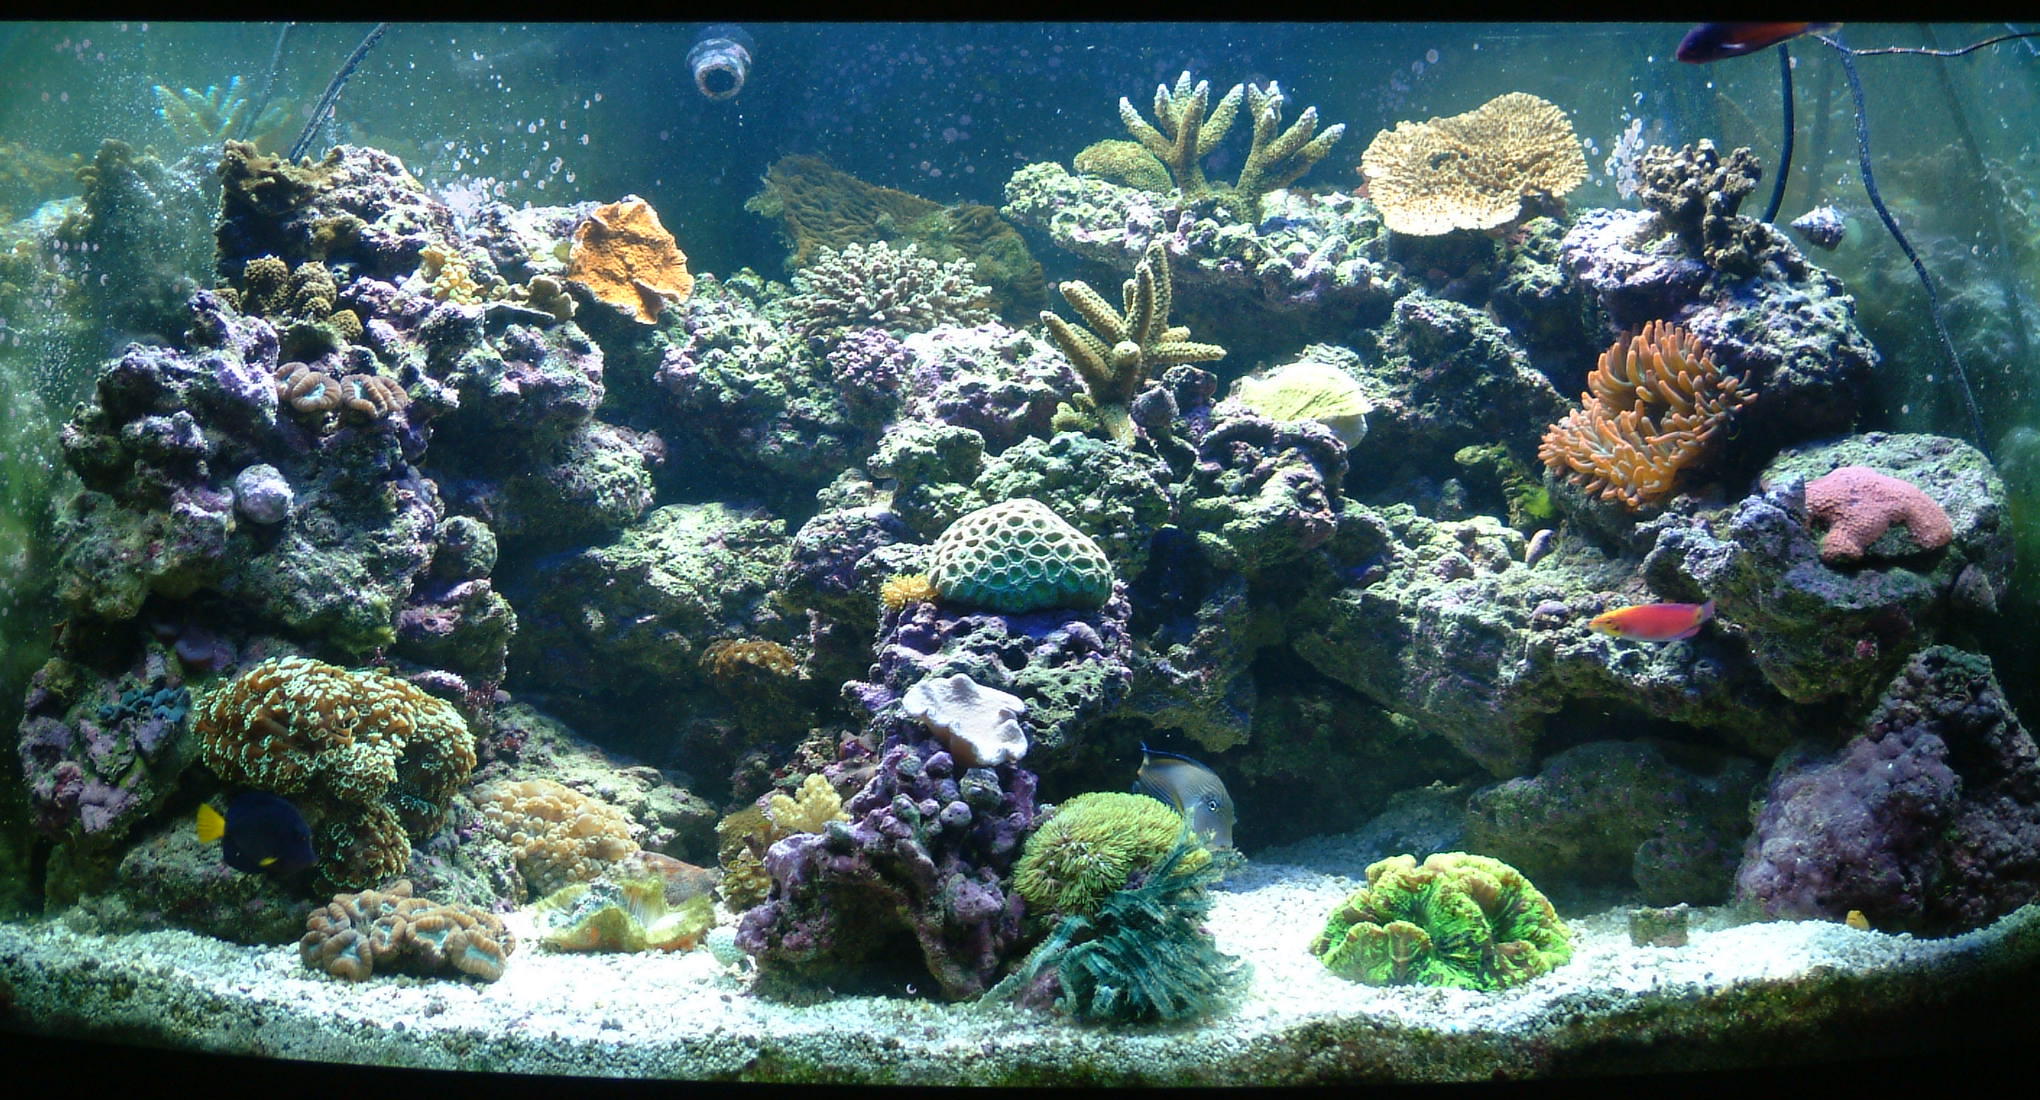 Saltwater aquarium photo